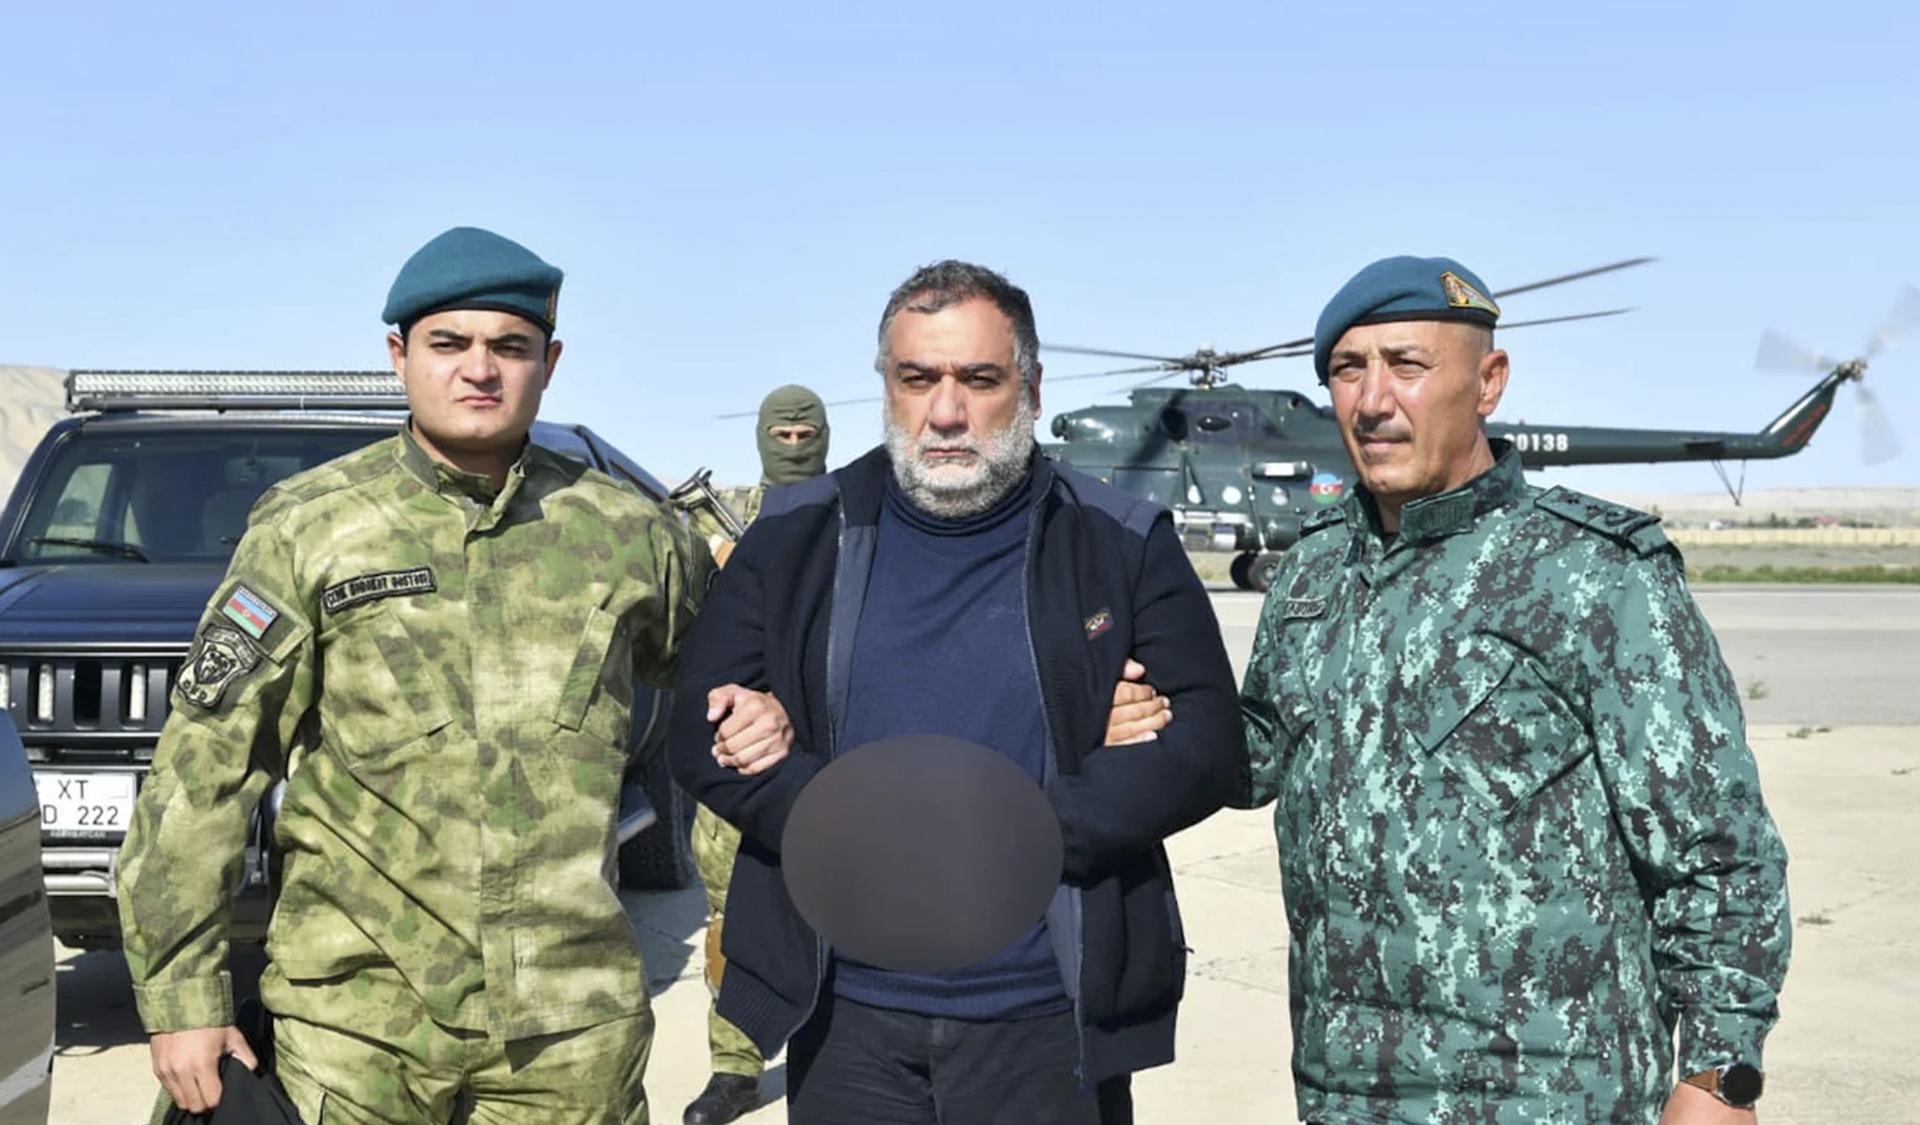 El exprimer ministro de Nagorno Karabaj Ruben Vardanián, durante su detención en la frontera. EFE/EPA/STATE BORDER SERVICE OF AZERBAIJAN / HANDOUT HANDOUT EDITORIAL USE ONLY/NO SALES